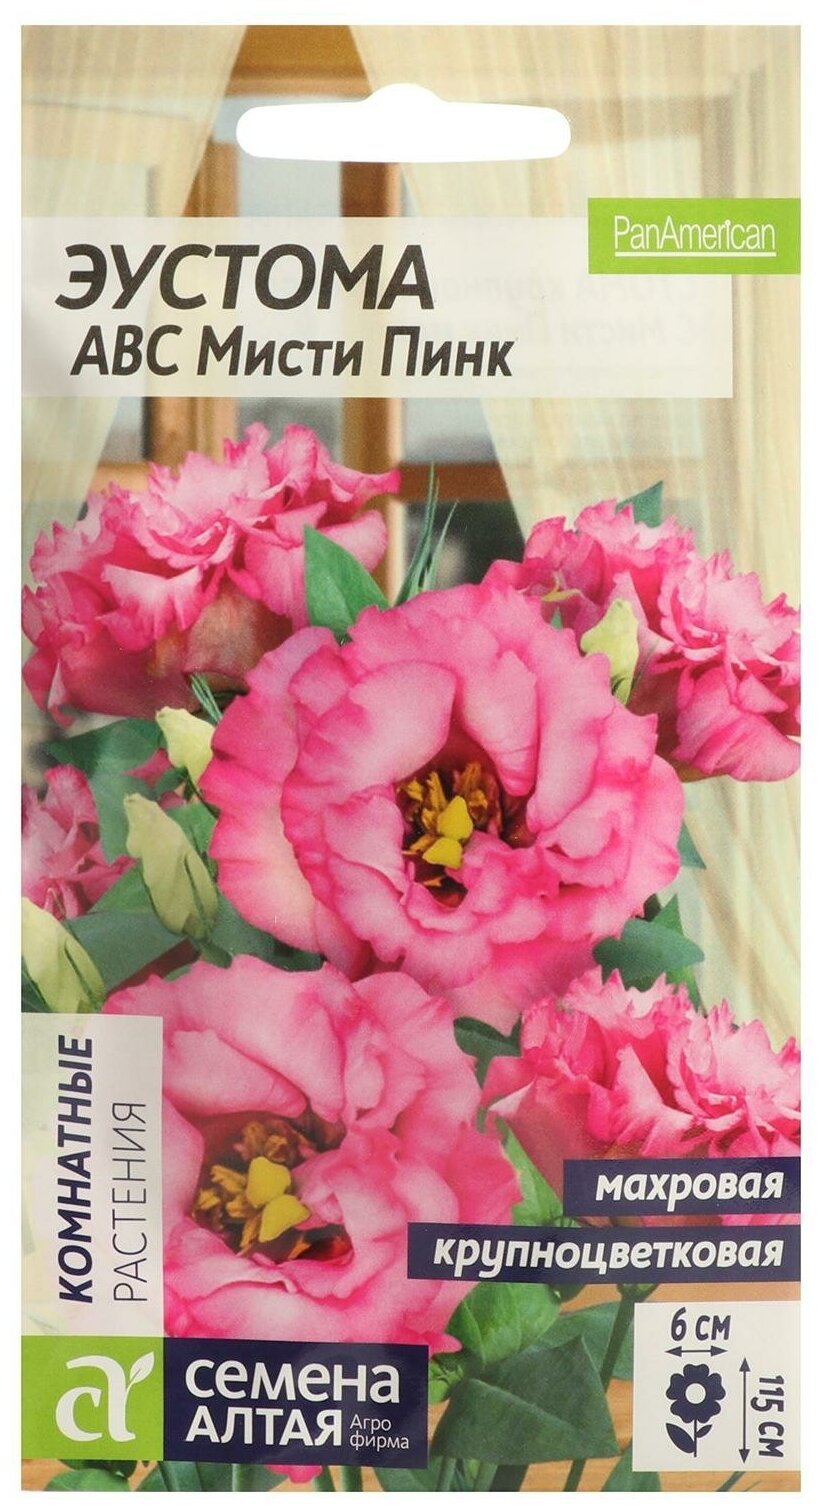 Эустома ABC розовая махровая семена Алтая